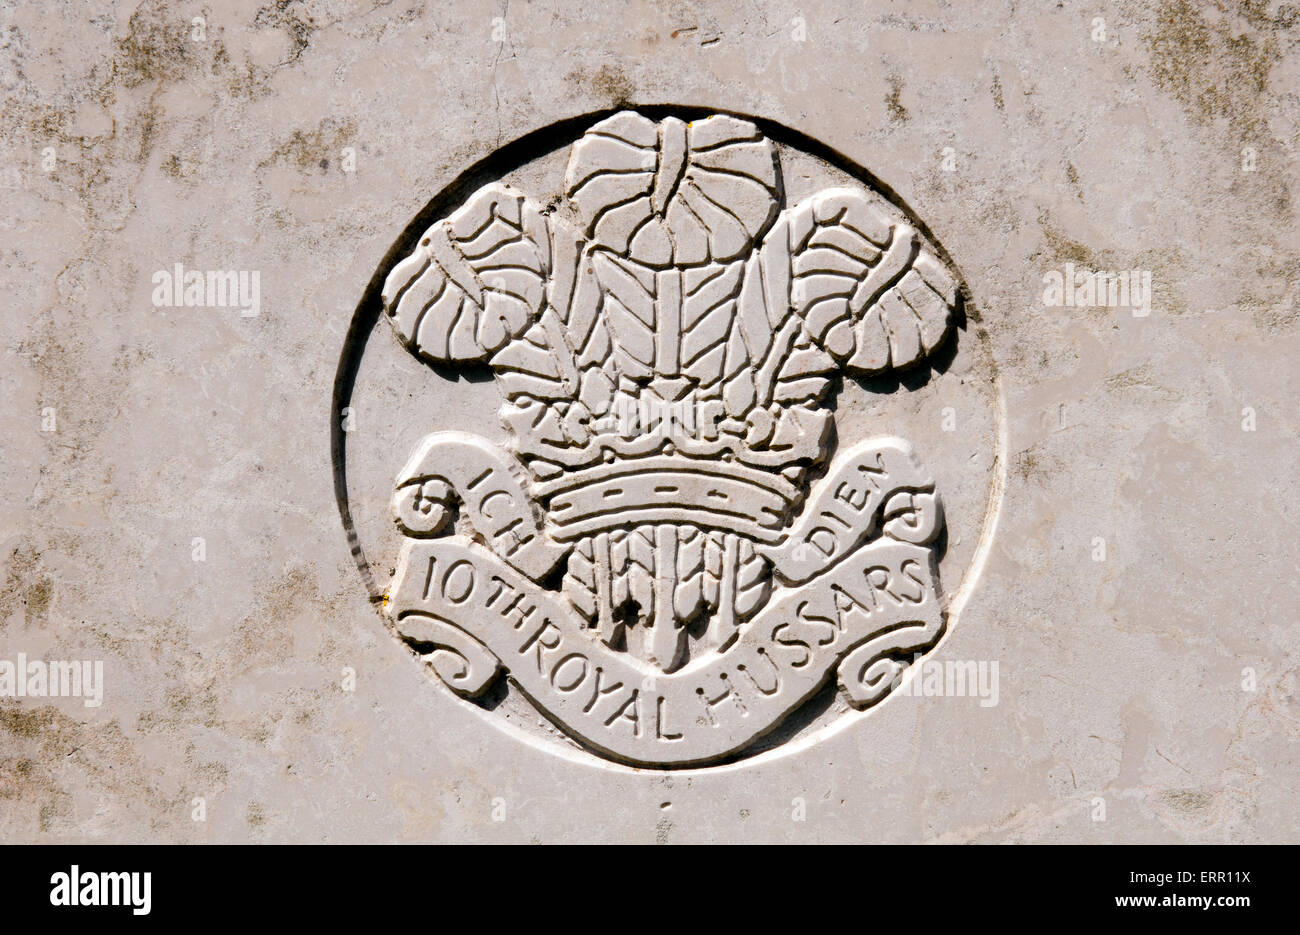 10e Royal Hussars badge sur une grave guerre Banque D'Images